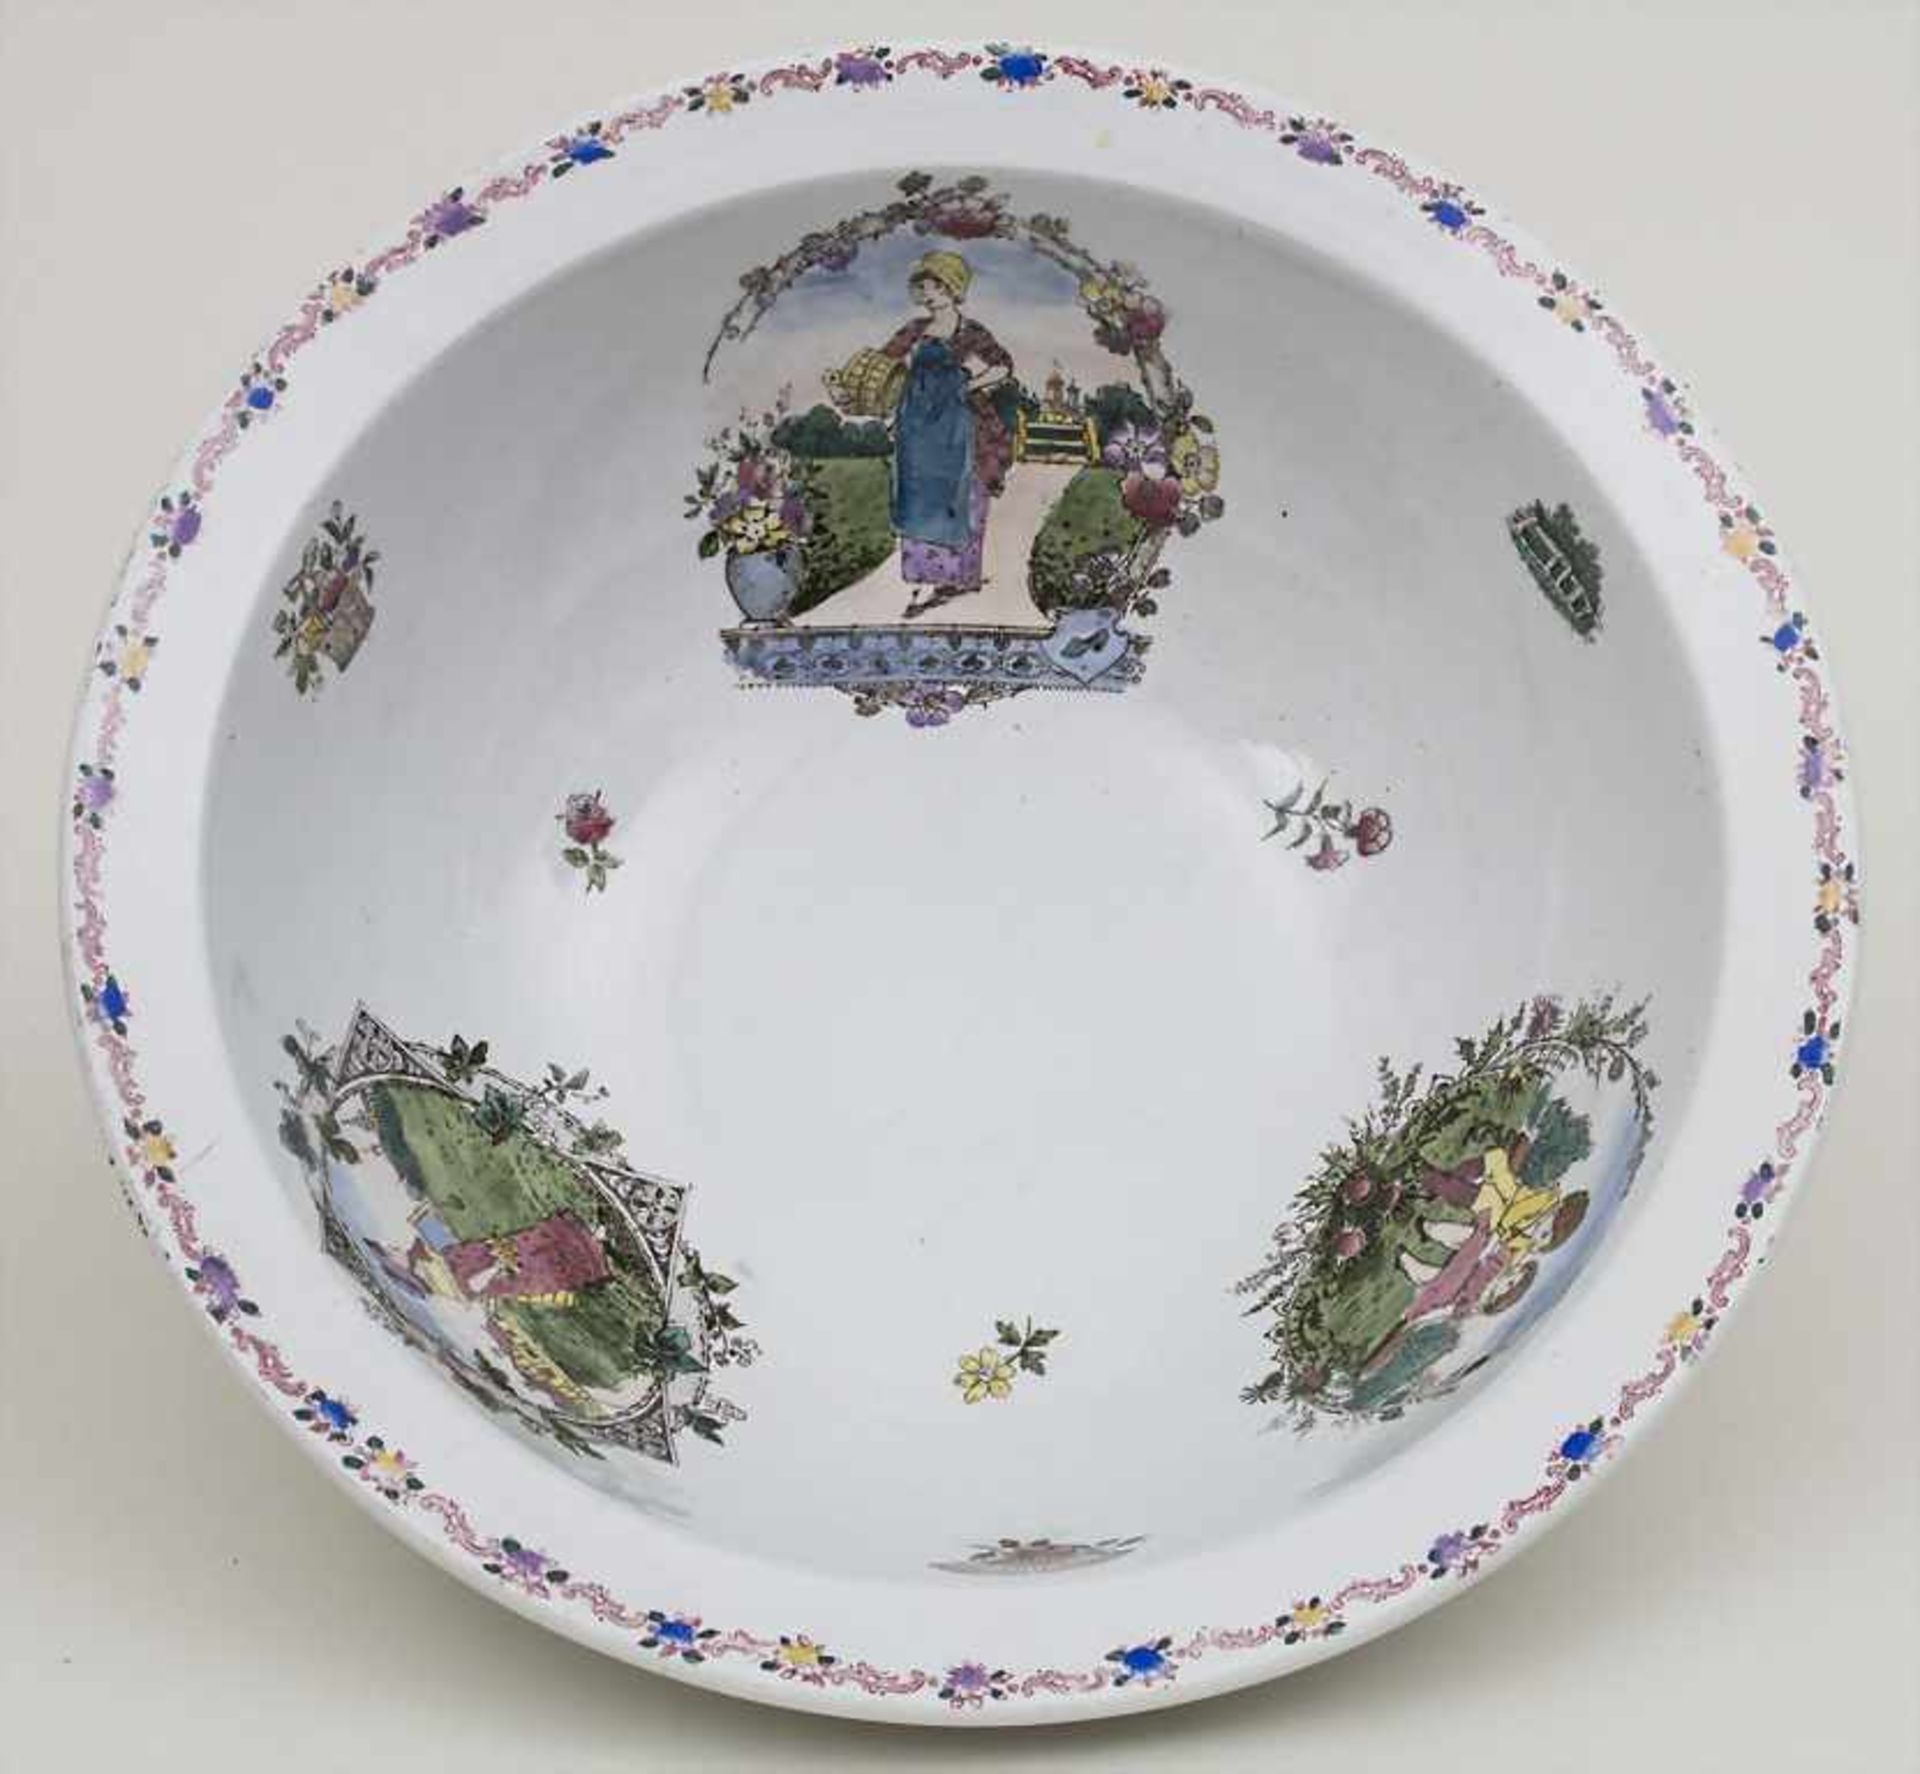 Waschschüssel mit den Lebenszyklen eines Mädchens / A wash bowl depicting the periods of life of a - Bild 2 aus 3